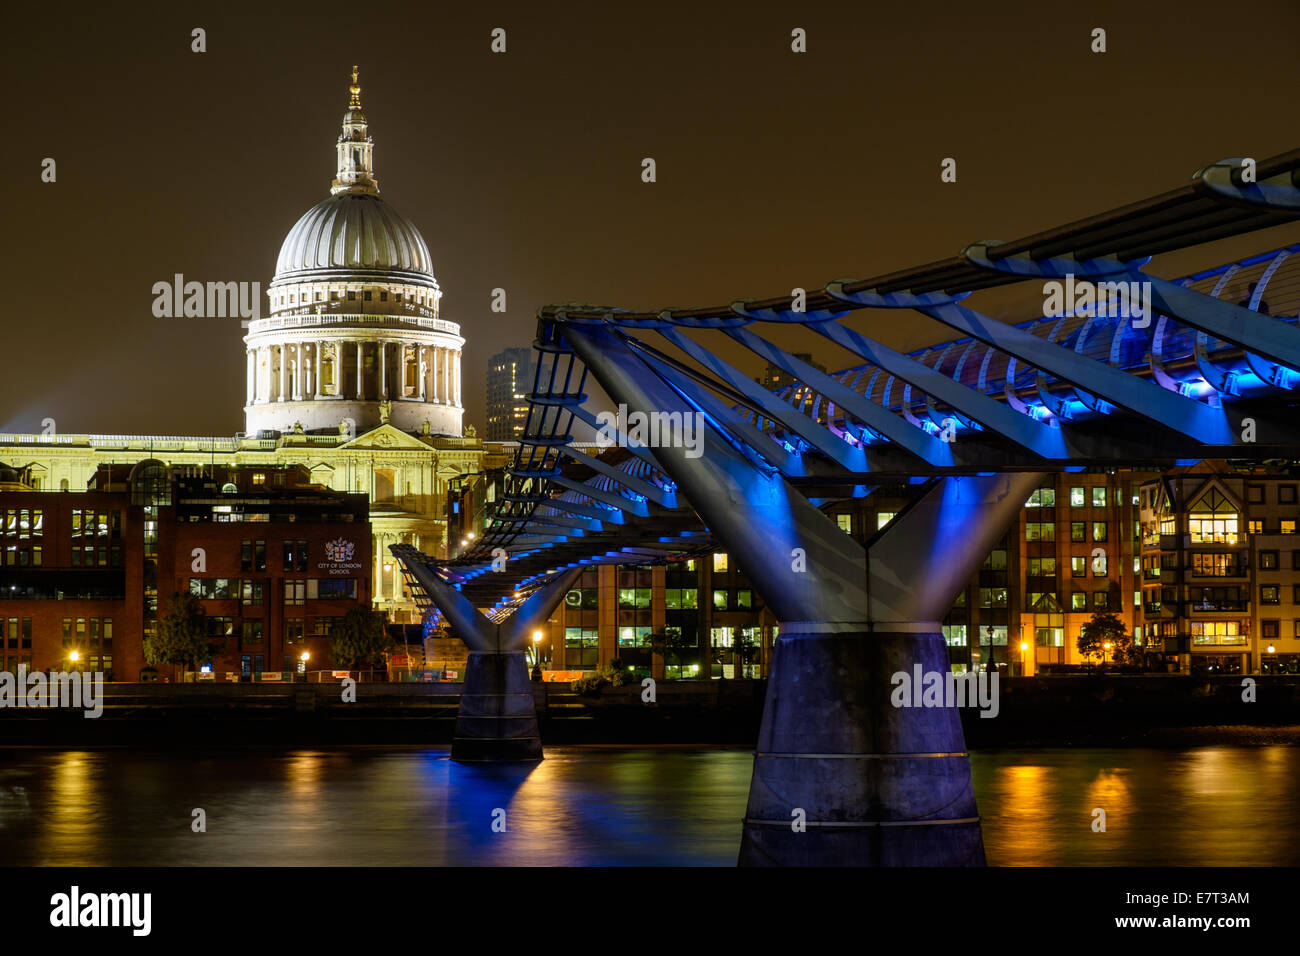 La noche larga exposición vista de la catedral de San Pablo y el puente del milenio desde la ribera sur del río Támesis de Londres Foto de stock